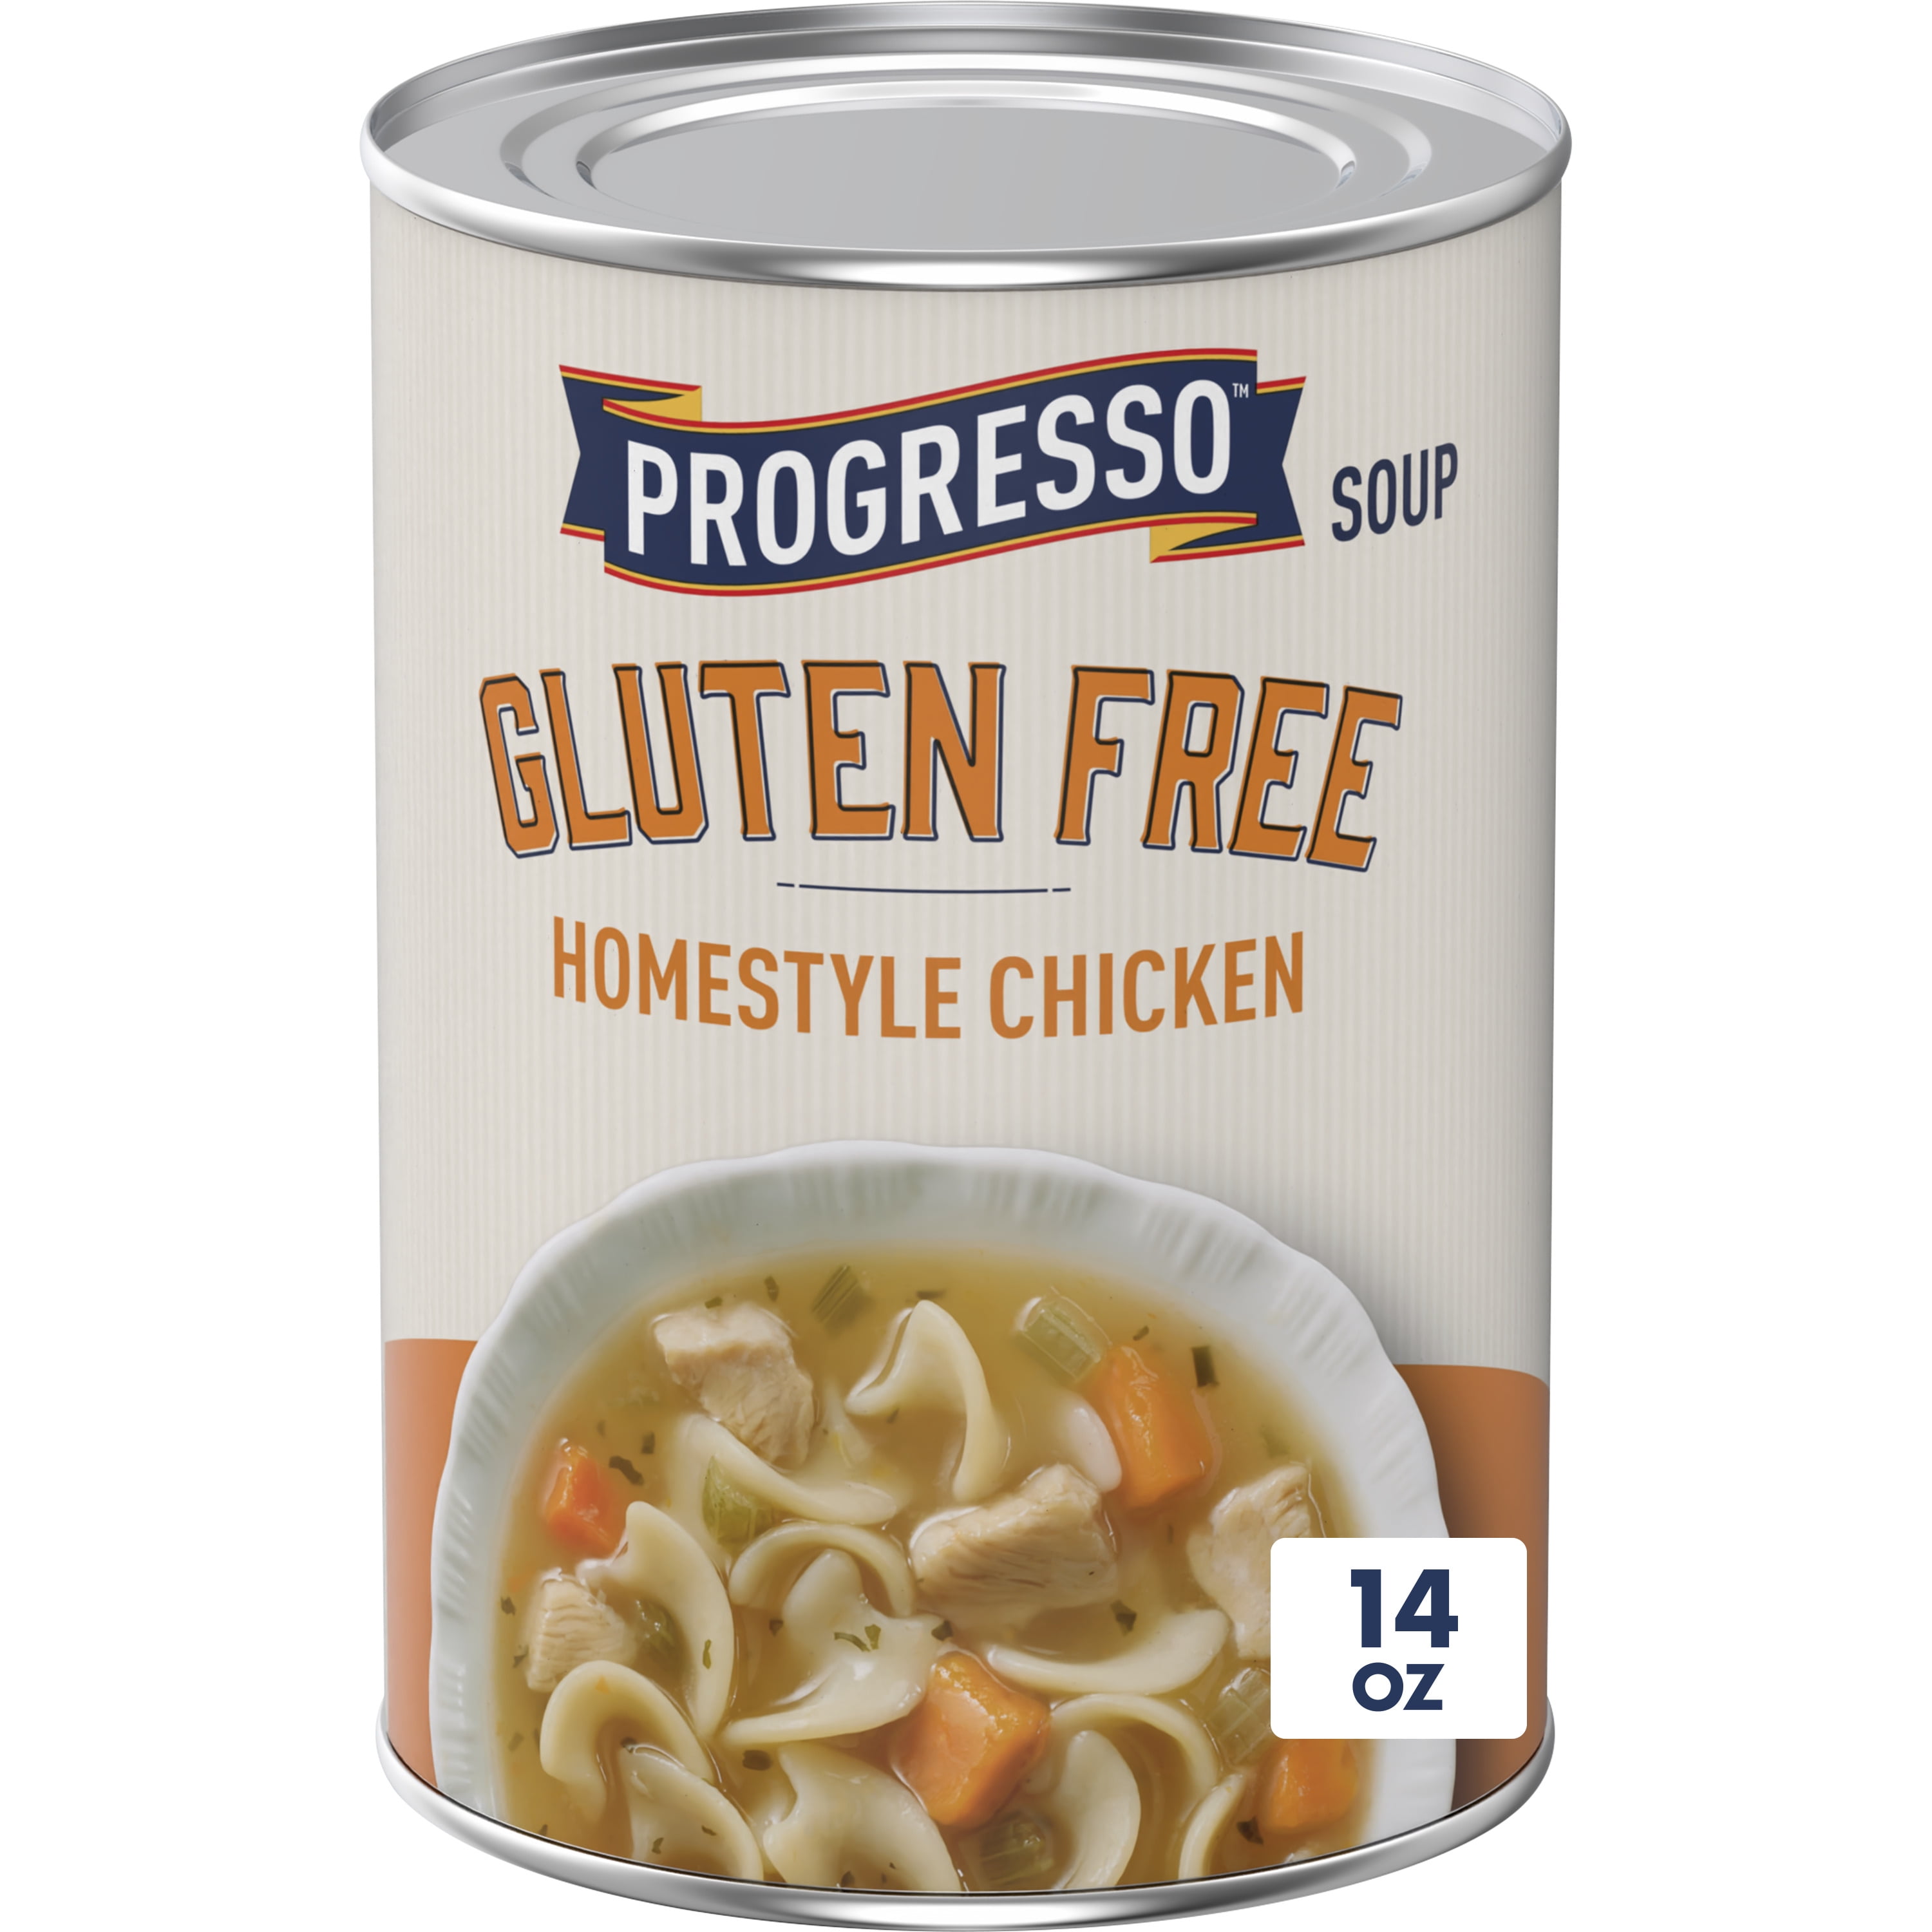 Gluten Free Chicken Noodle Soup - Stay Gluten Free